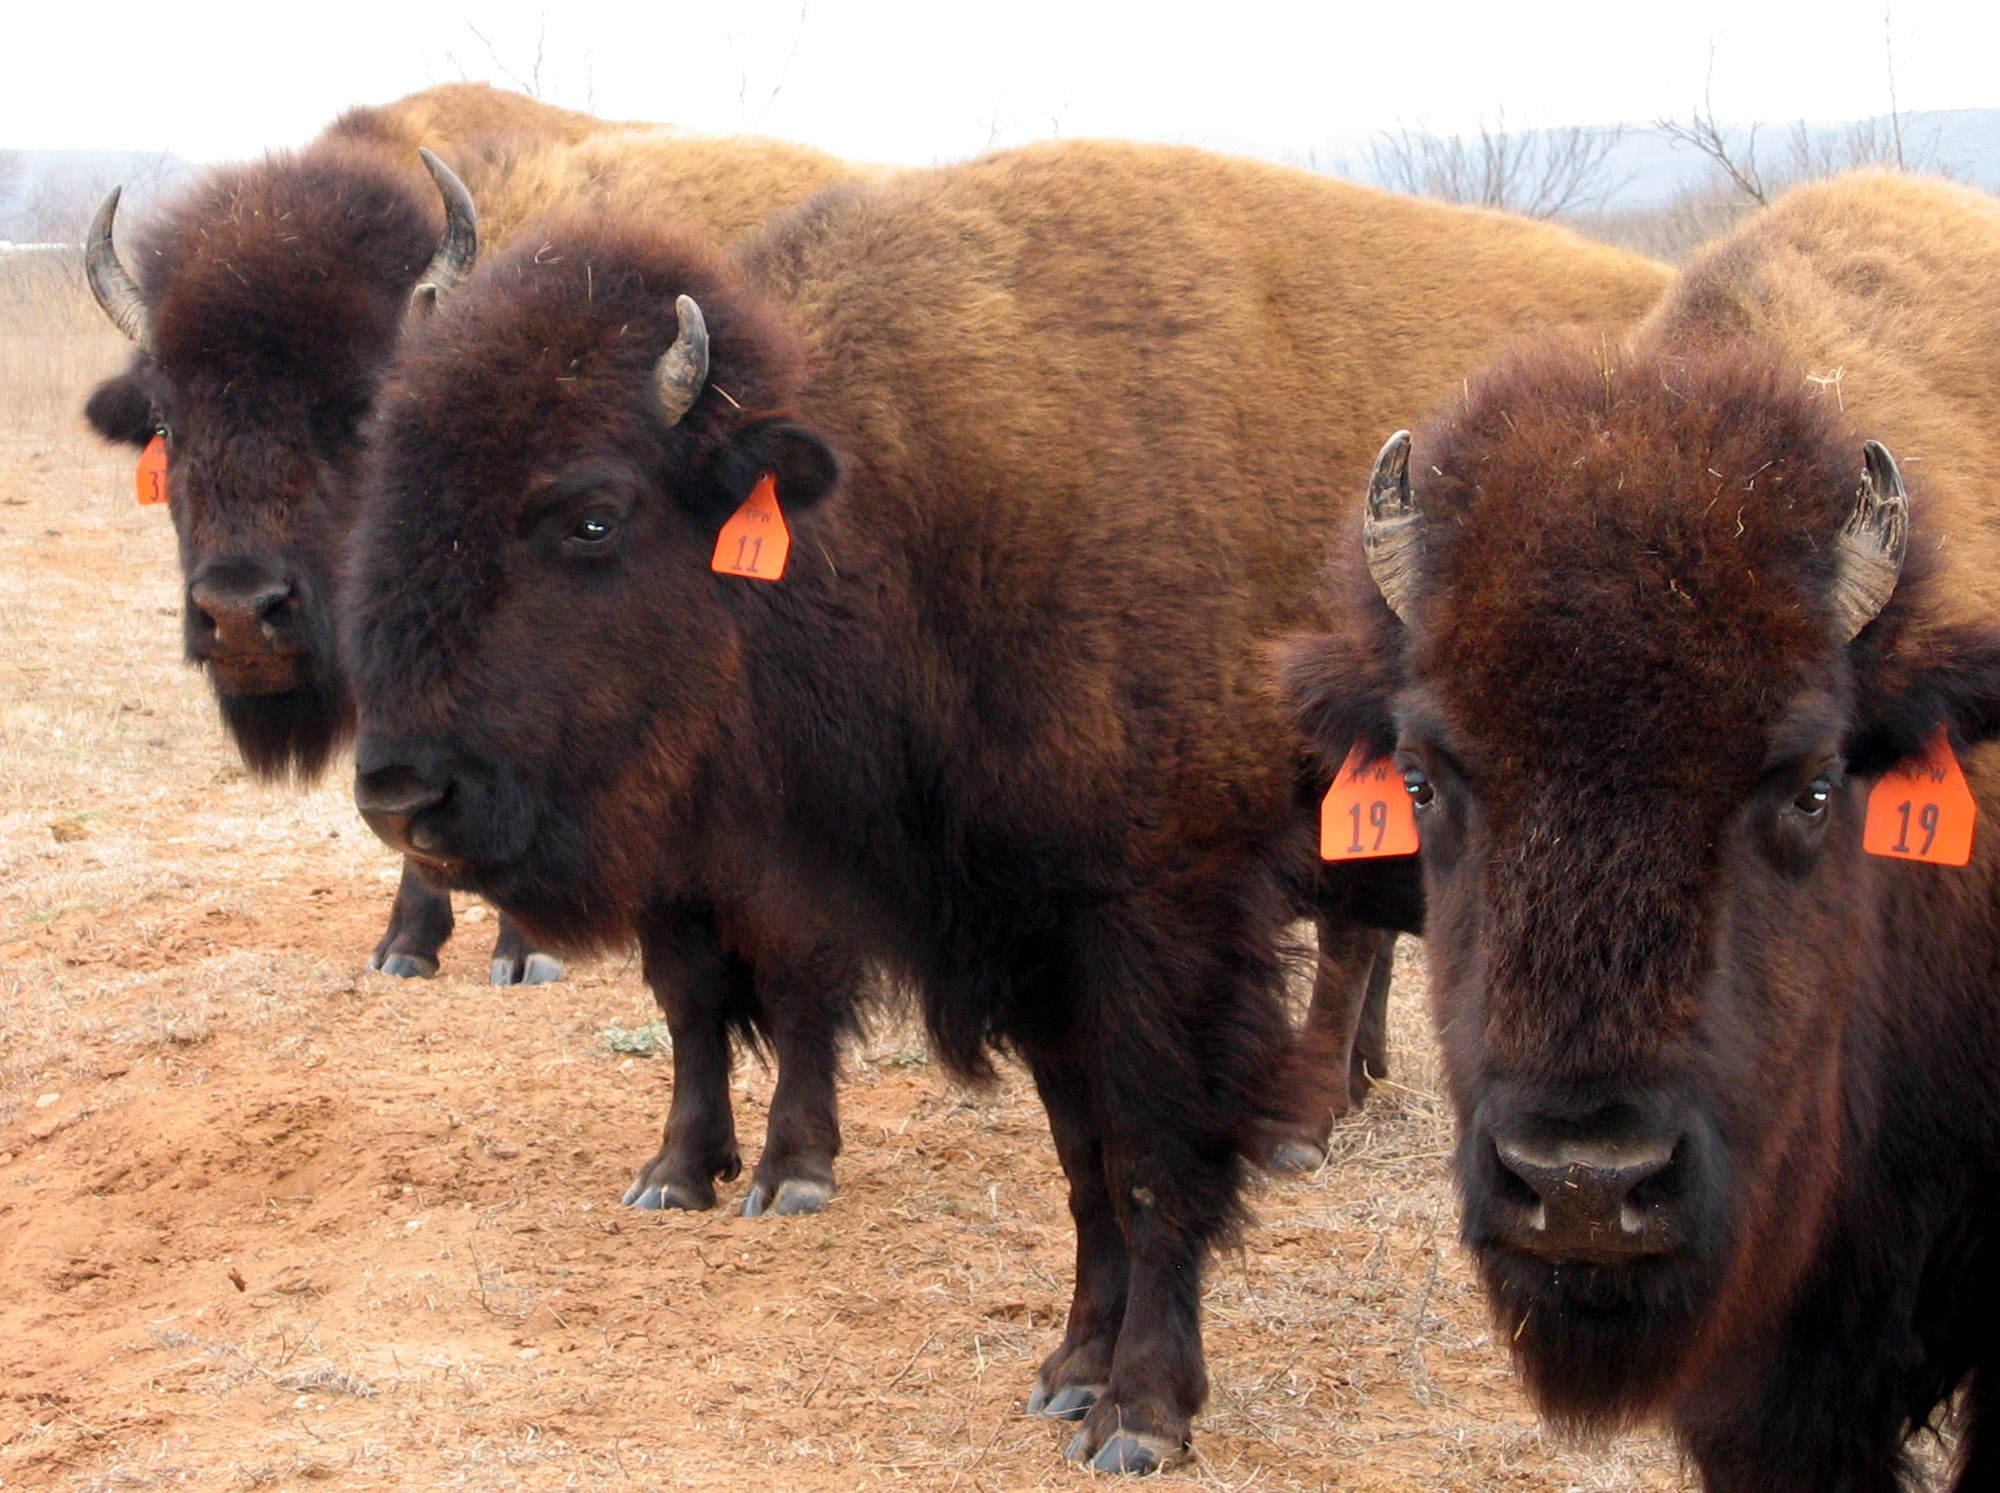 Texas' historic bison herd has more roaming room